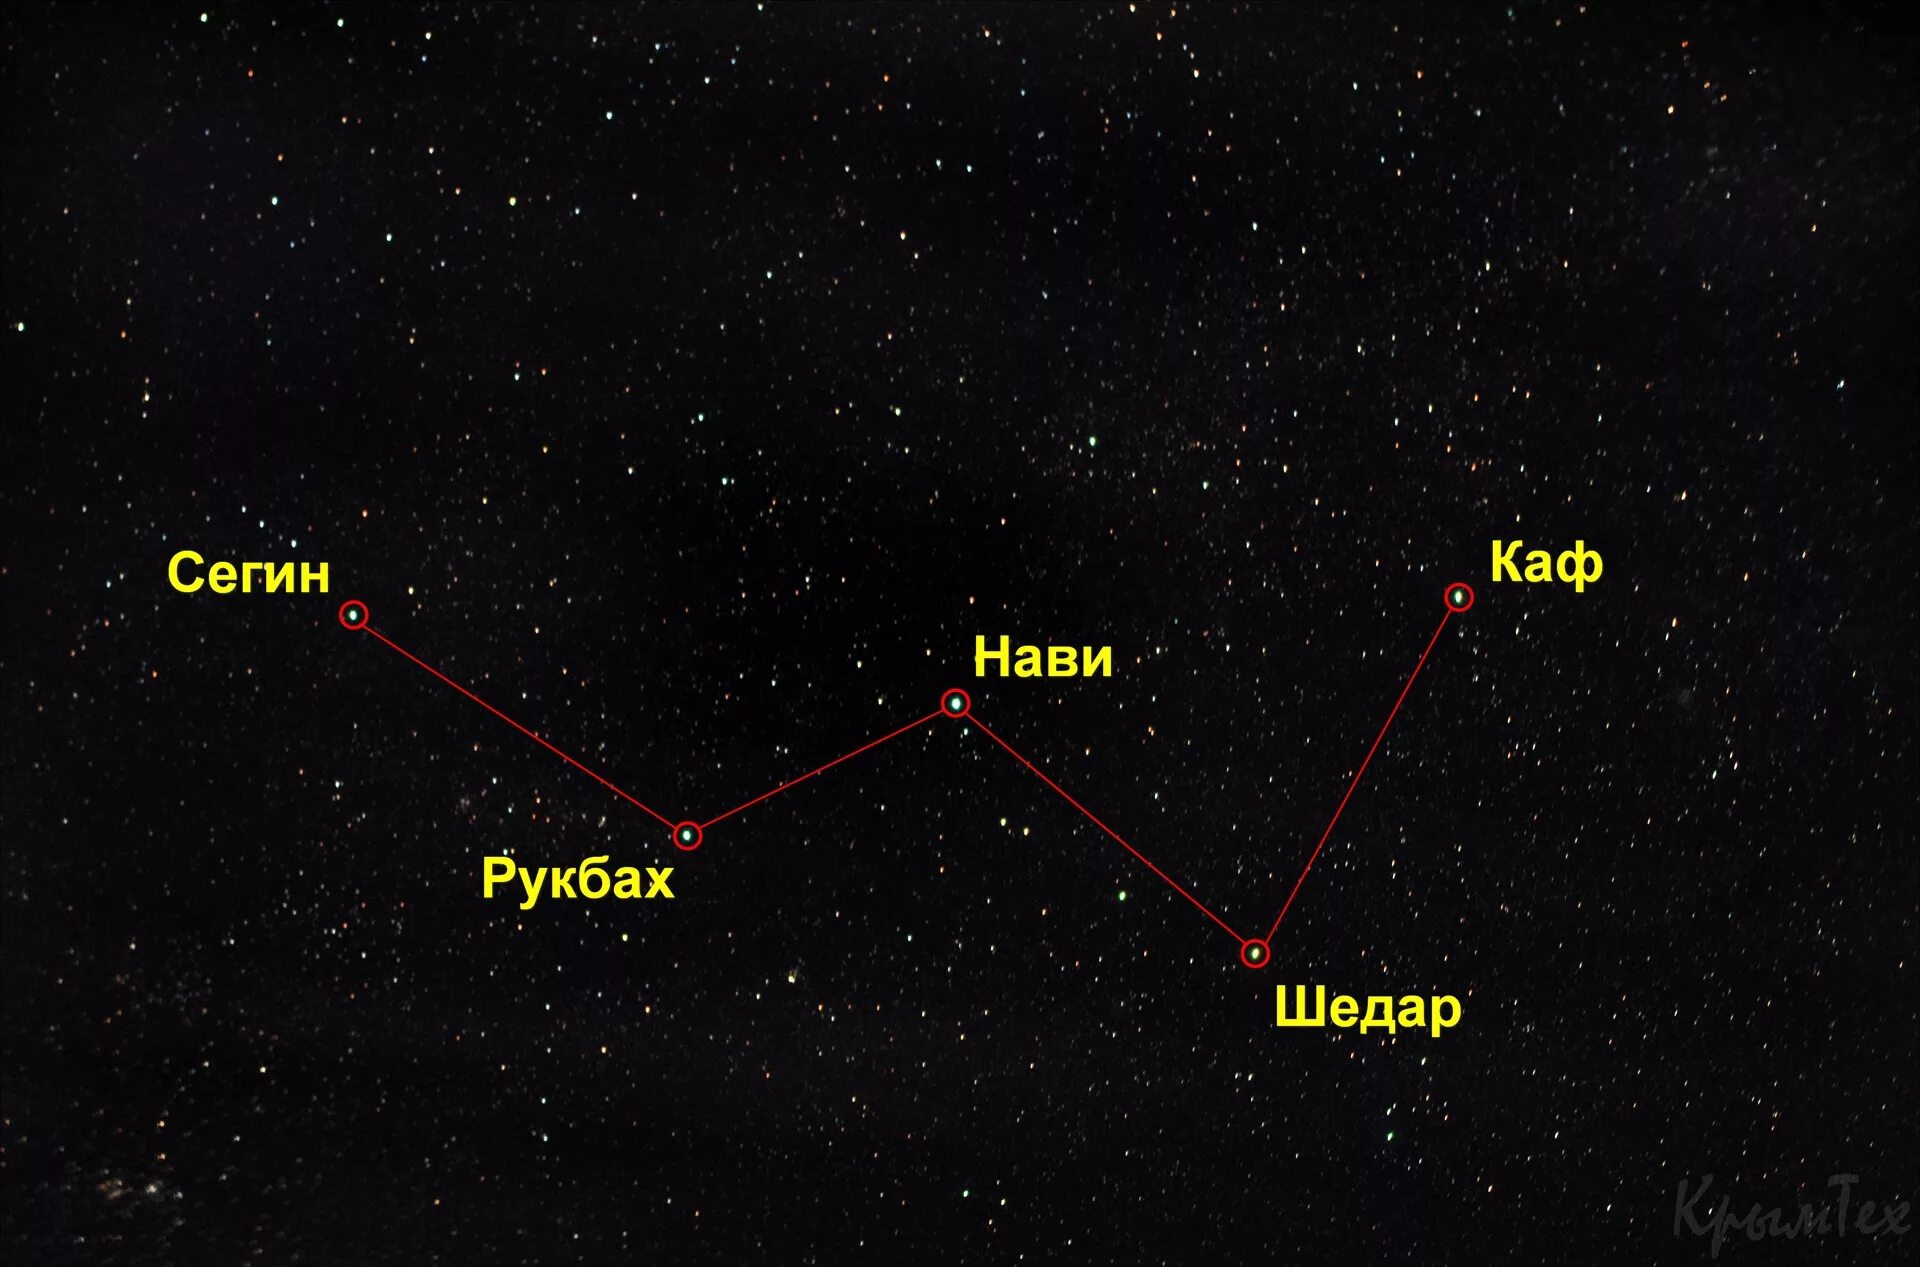 Кассиопея Созвездие название звезд. Звезда Сегин Кассиопея. Самая яркая звезда в созвездии Кассиопея. Шедар Созвездие Кассиопея. Созвездие в форме буквы